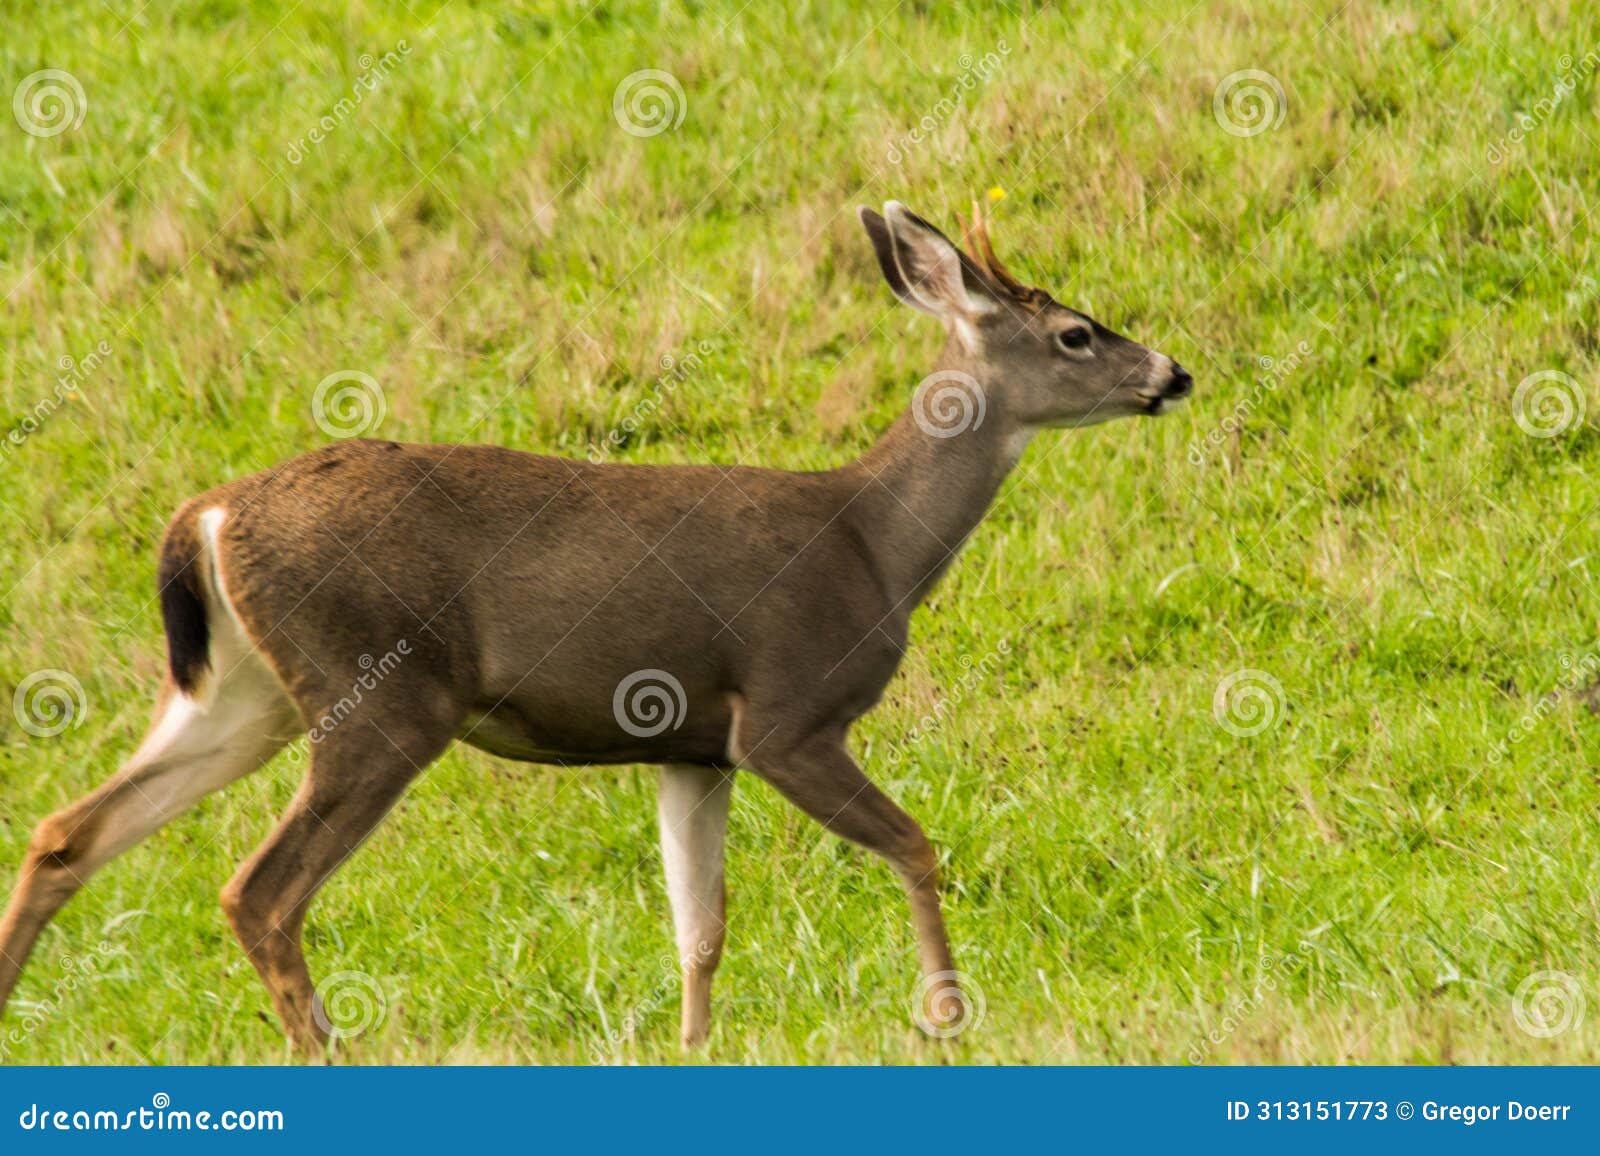 young deer (cervidae cervus) walking in a field